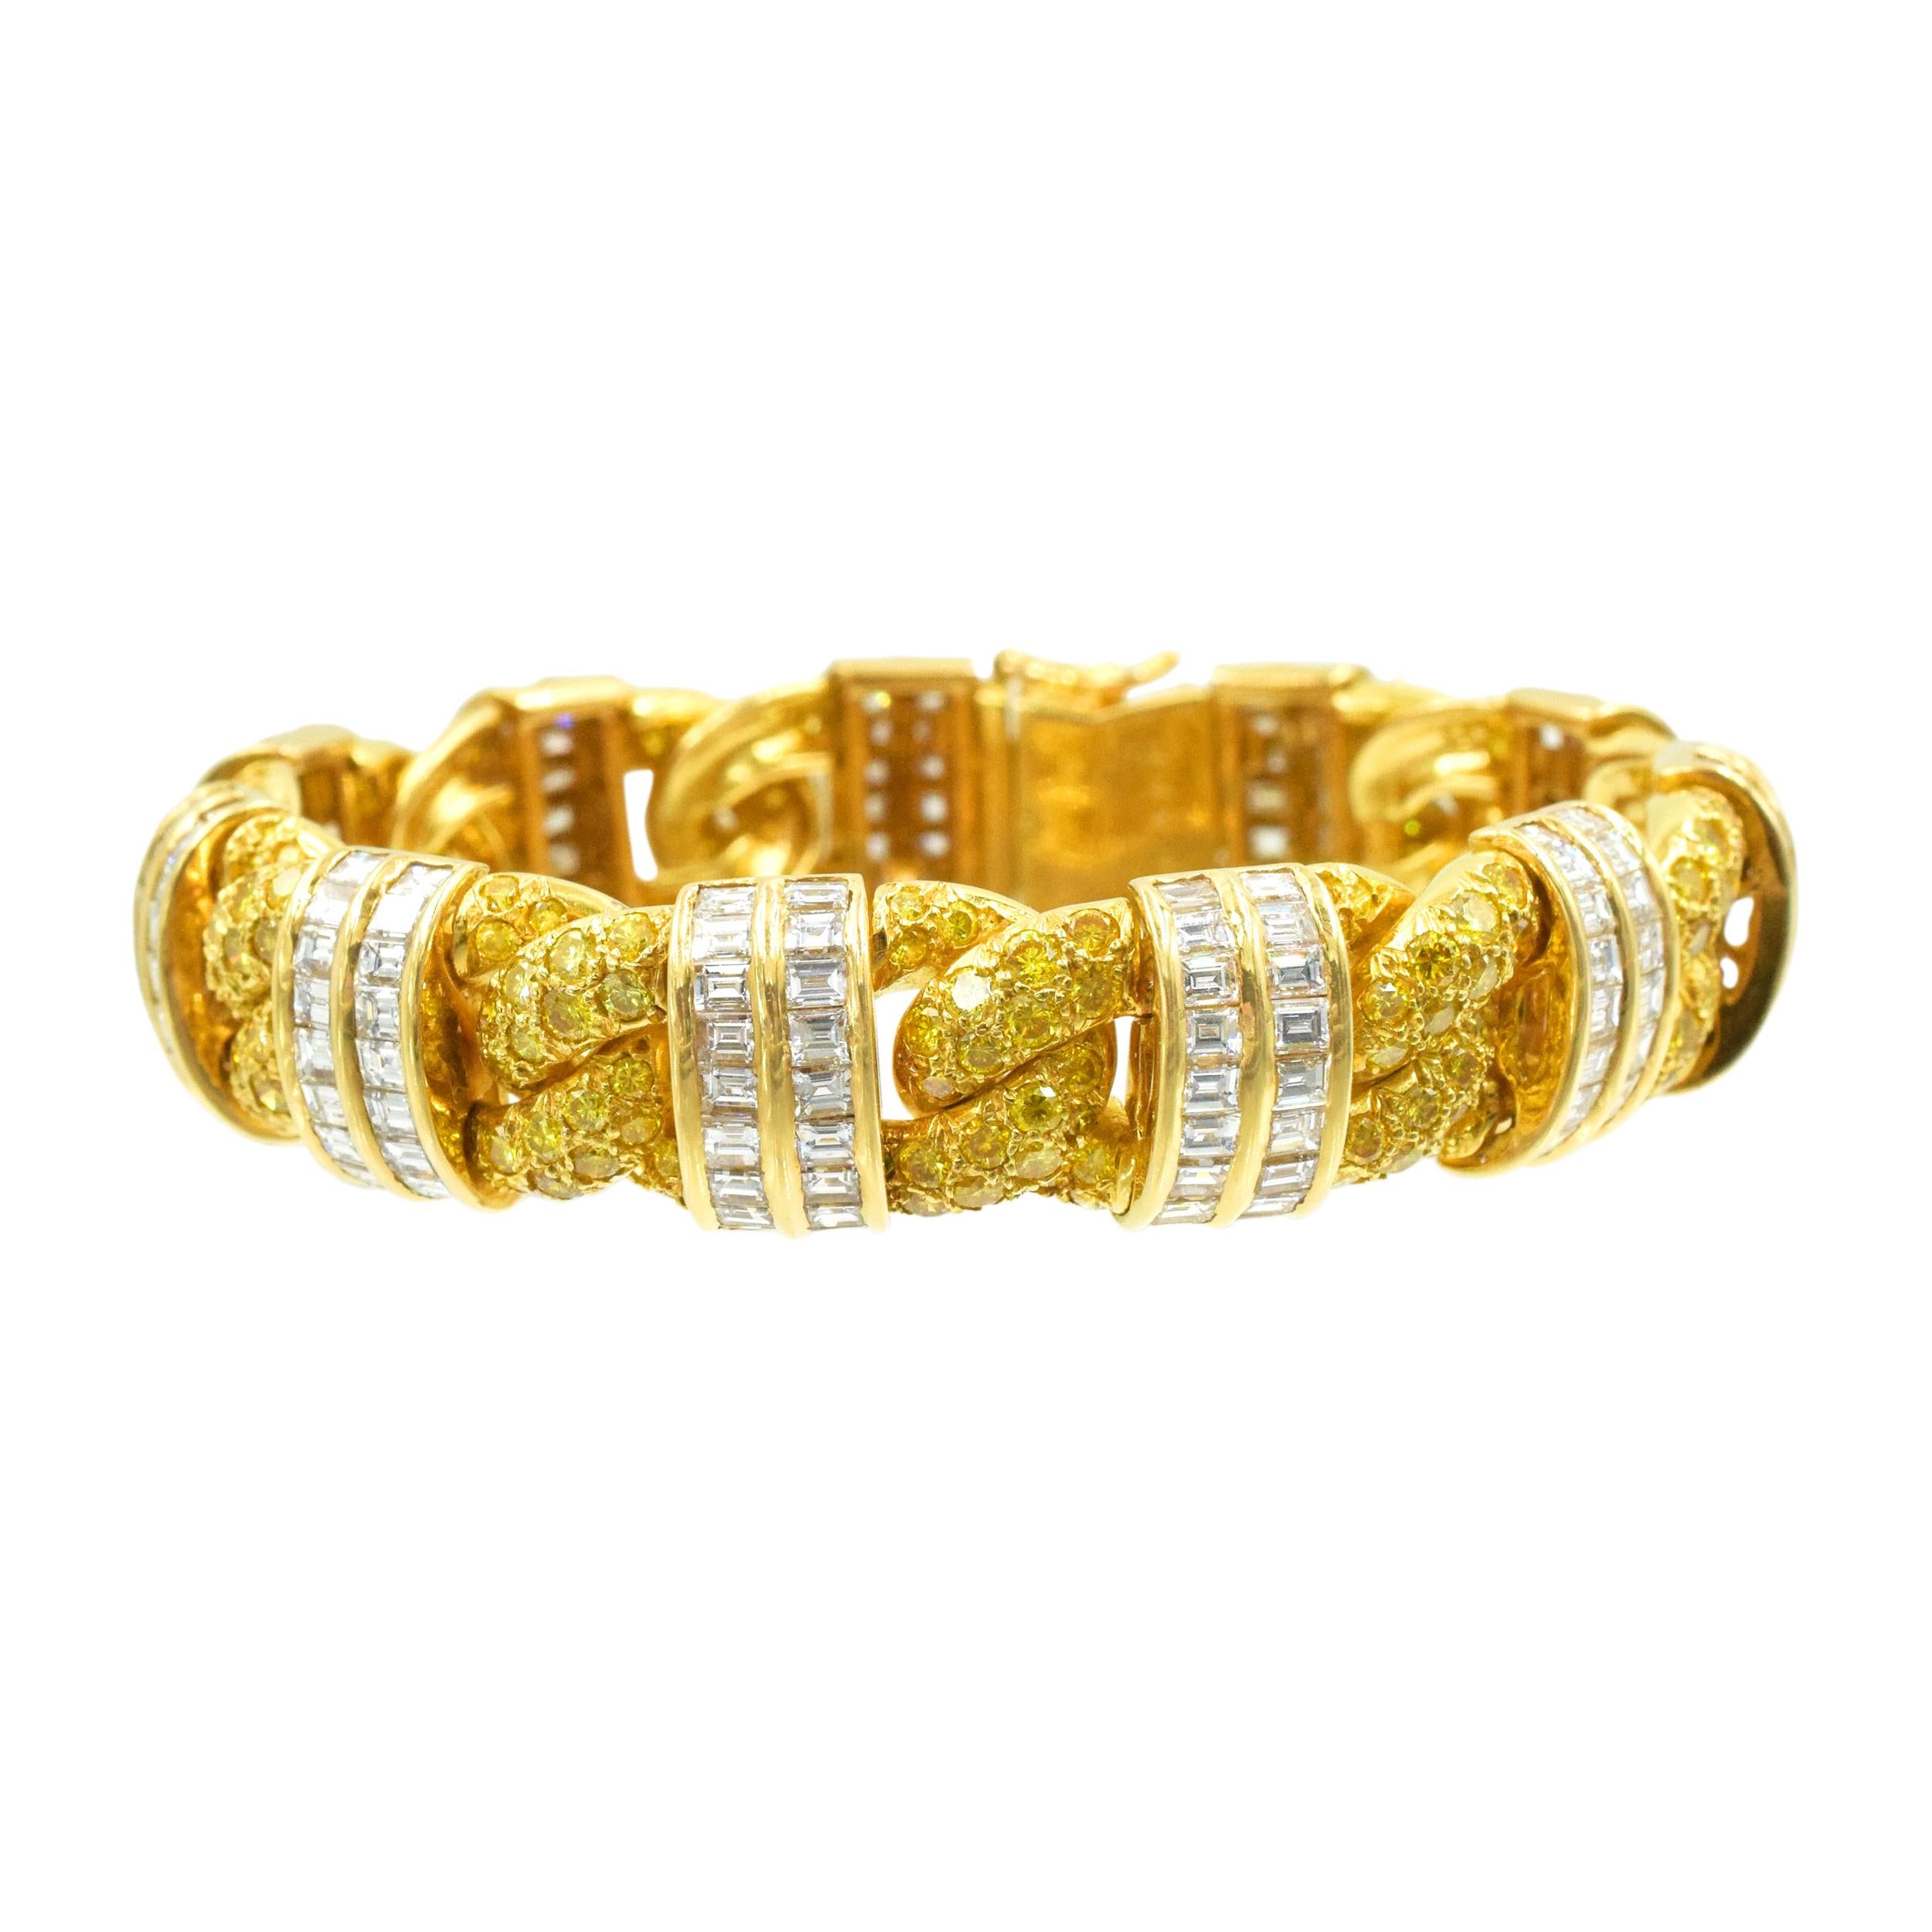 GRAFF
 Fancy intensive gelbe und weiße Diamanten Armband Dieses Armband hat 233 fancy intensive gelbe Diamanten mit einem Gewicht von etwa 7 Karat und 196 Baguette Form Diamanten mit einem Gewicht von etwa 10 Karat alle in 18k Gelbgold gefasst.